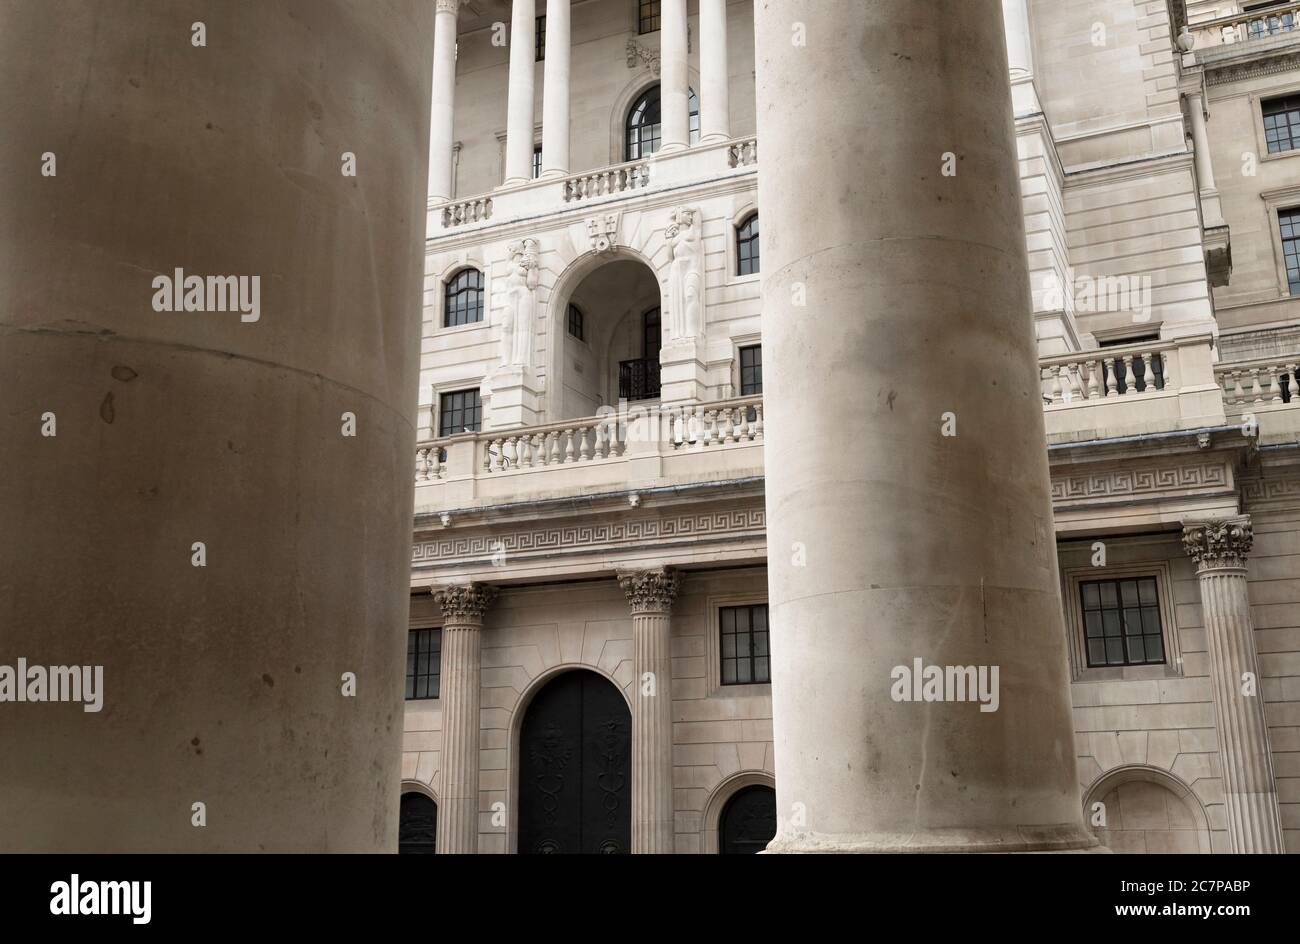 Bank of England è la banca centrale del Regno Unito. Talvolta conosciuta come la ‘Vecchia Signora’ di Threadneedle Street. Threadneedle Street, Londra, Regno Unito 18 Mar 2017 Foto Stock